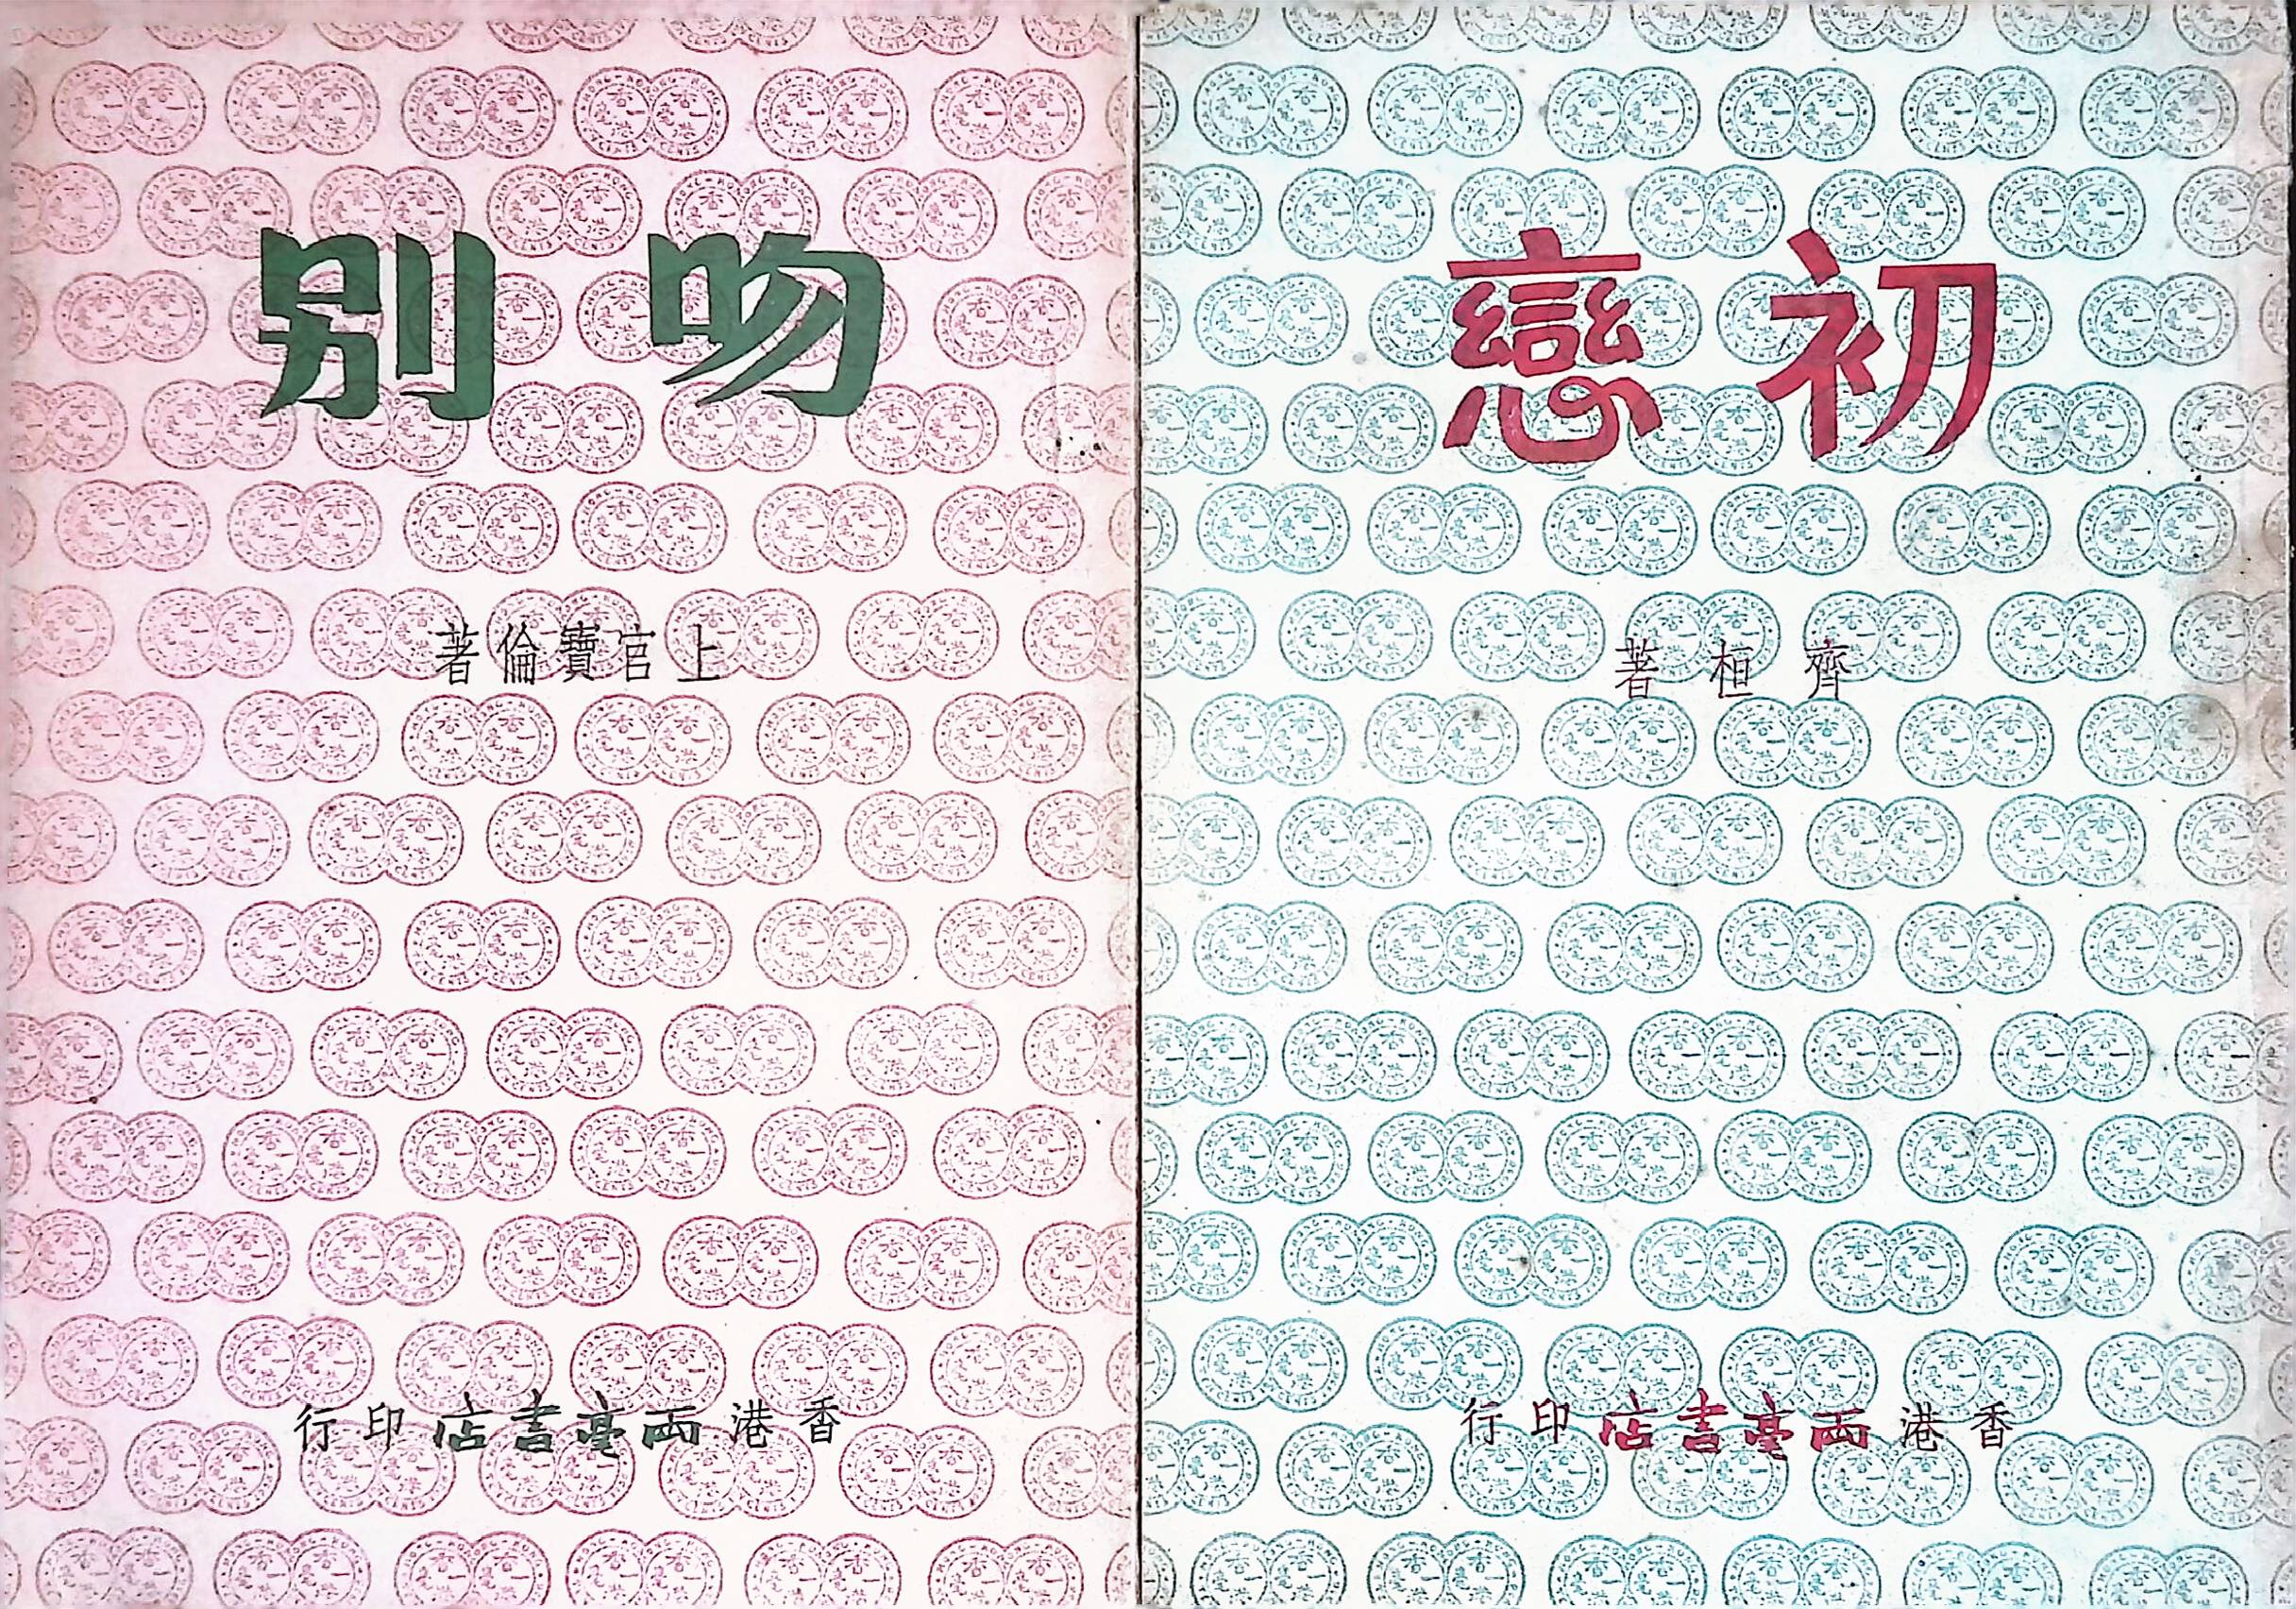 兩毫子小說《吻別》和《初戀》封面，以兩枚相連的港幣一角圖案為封面設計特色。尺寸為32開（13 cm X 19 cm），更便於閱讀和收藏。